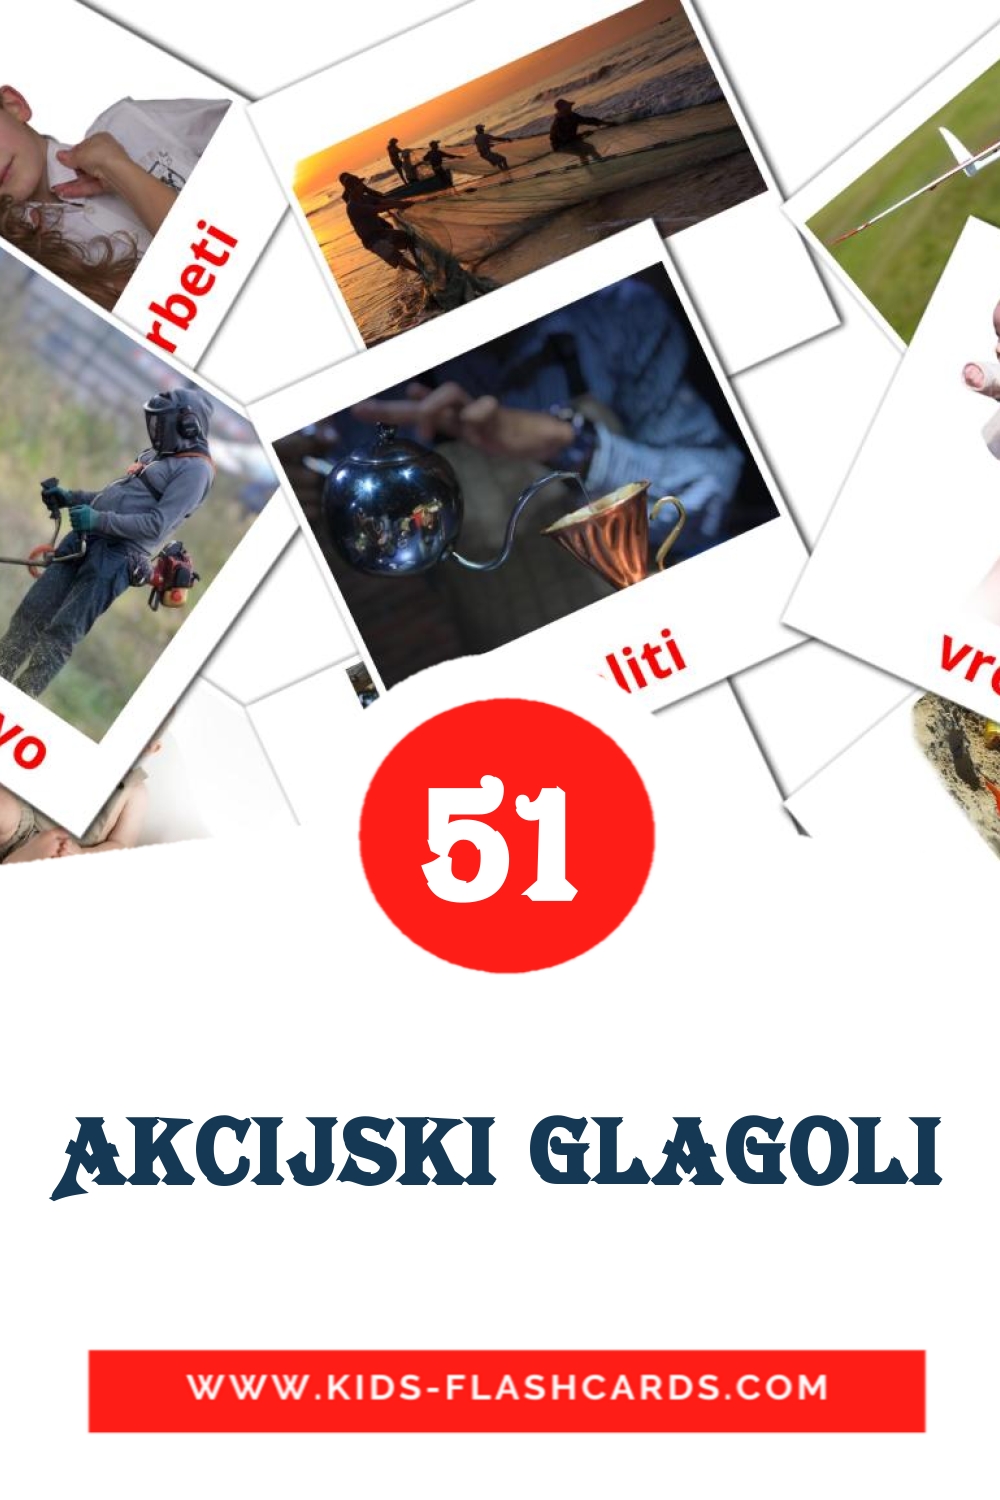 51 tarjetas didacticas de Akcijski glagoli para el jardín de infancia en esloveno